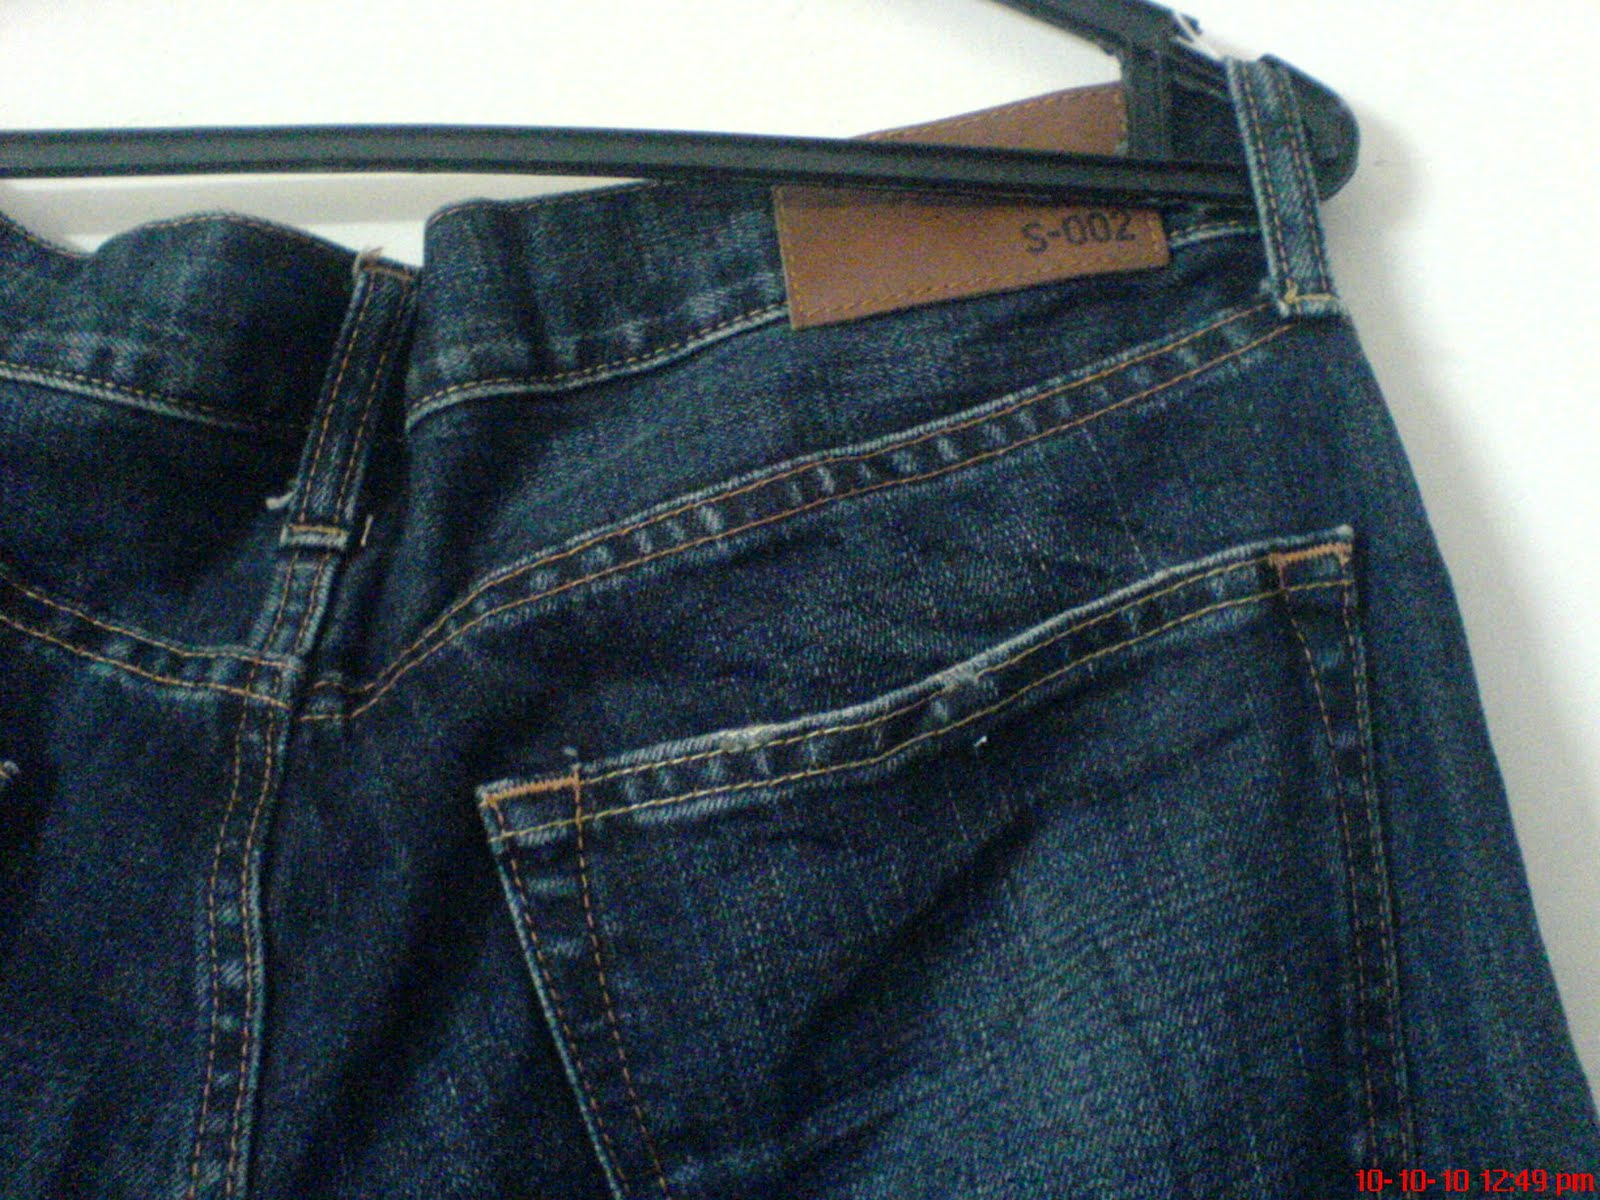 PLANET VINTAGE: Jeans Uniqlo S-002 Original Basic Size 36 (SOLD)